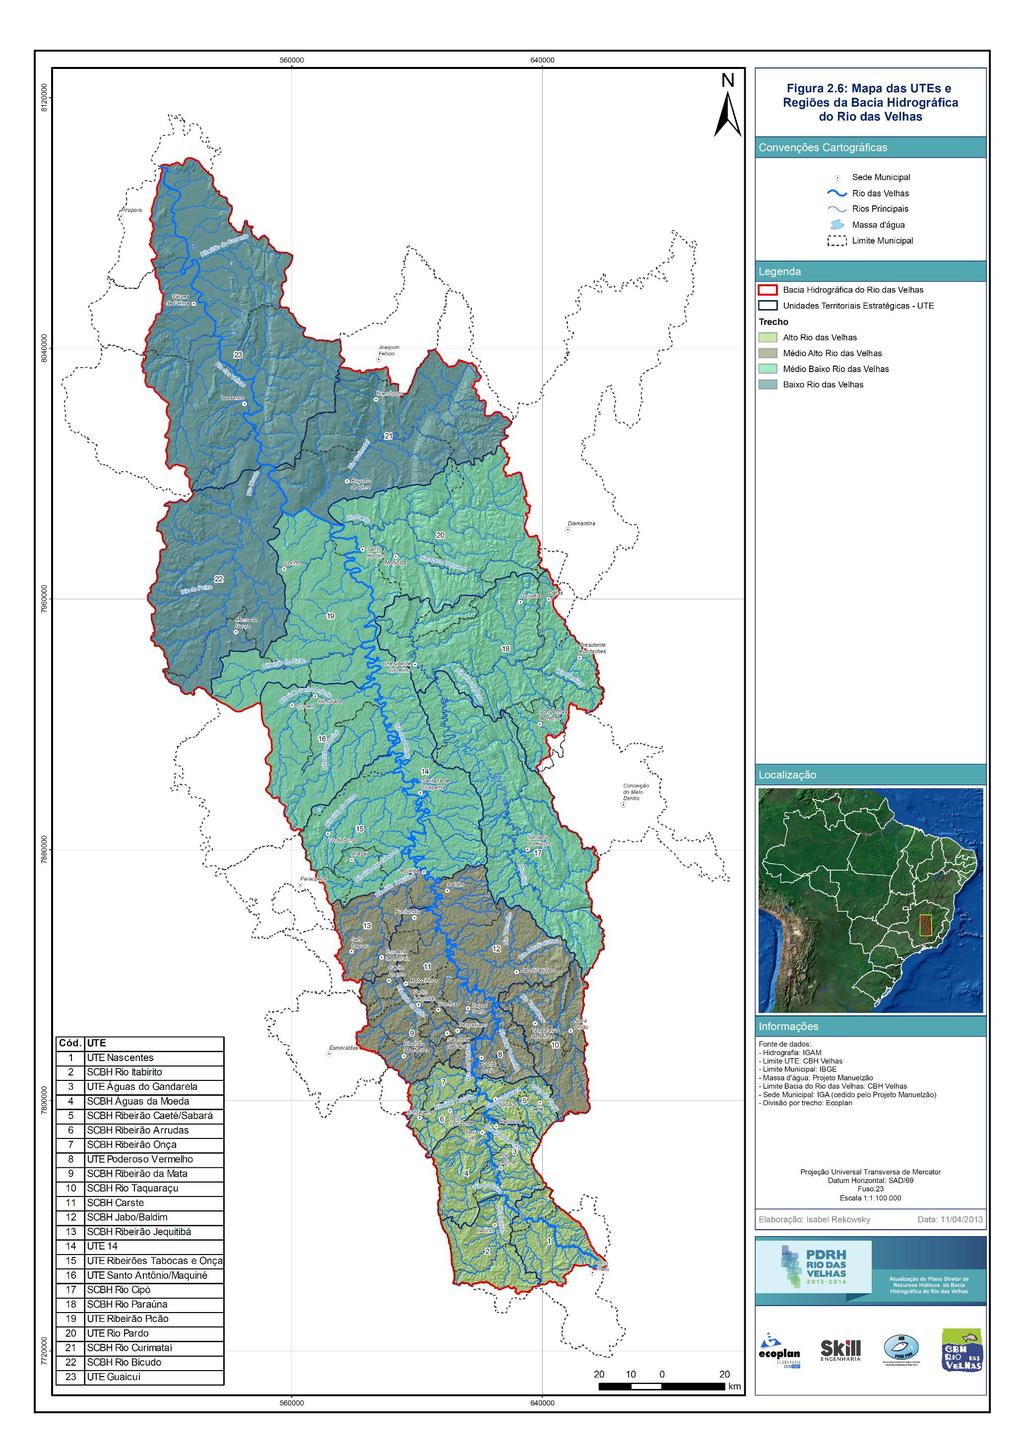 Figura 1: Mapa das UTEs e regiões da bacia hidrográfica do rio das Velhas Fonte: PDRH